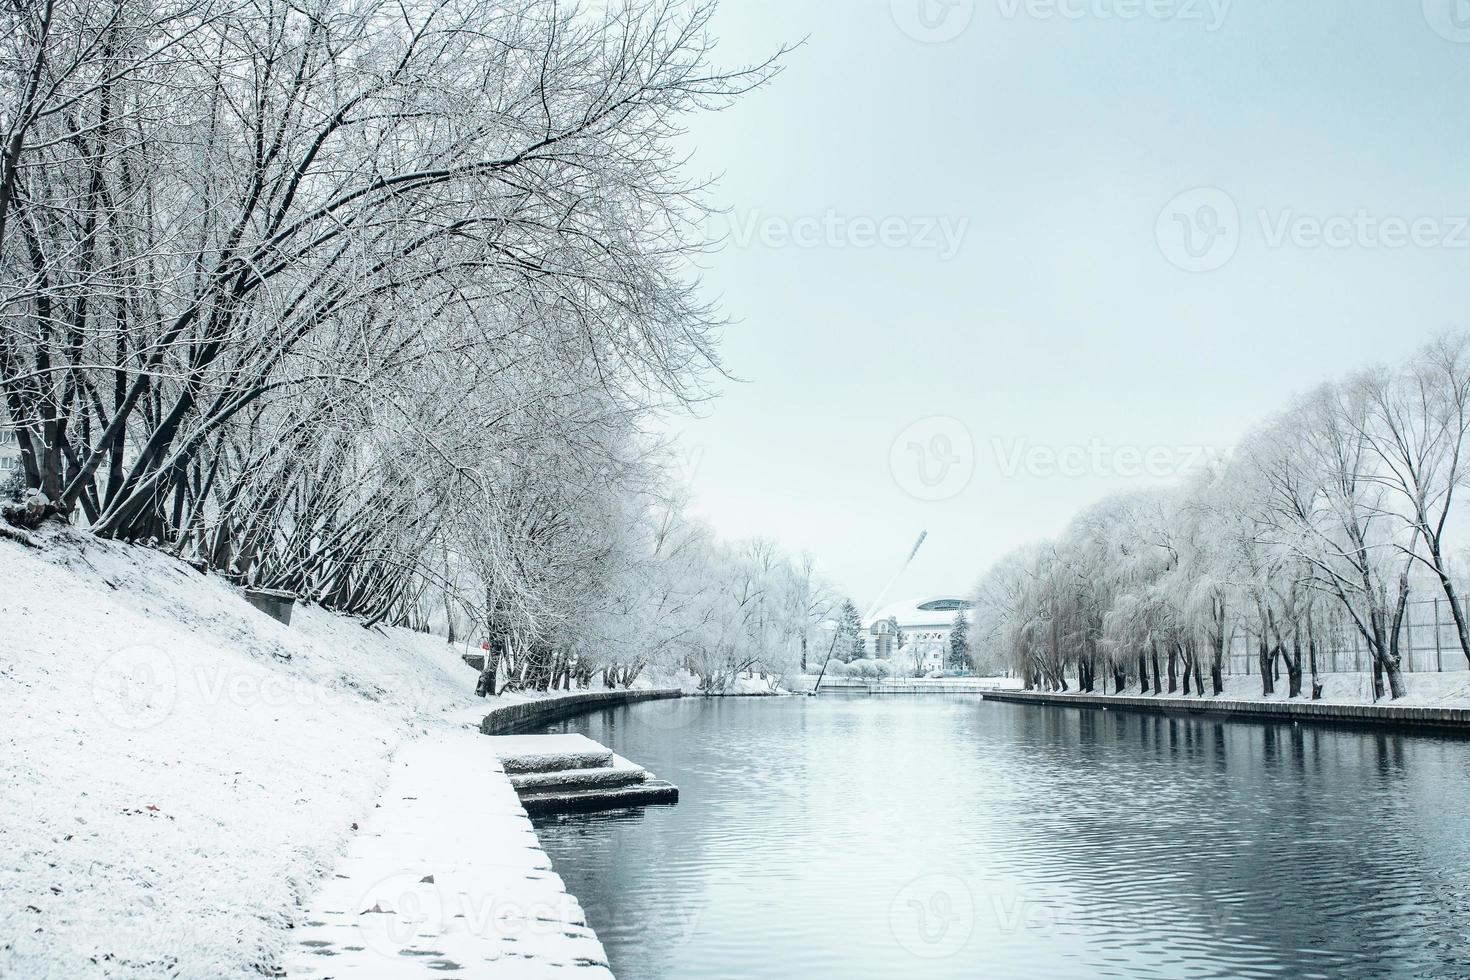 winter in de stad - sneeuw op de oevers van de rivier en op de bomen bedekt met vorst foto